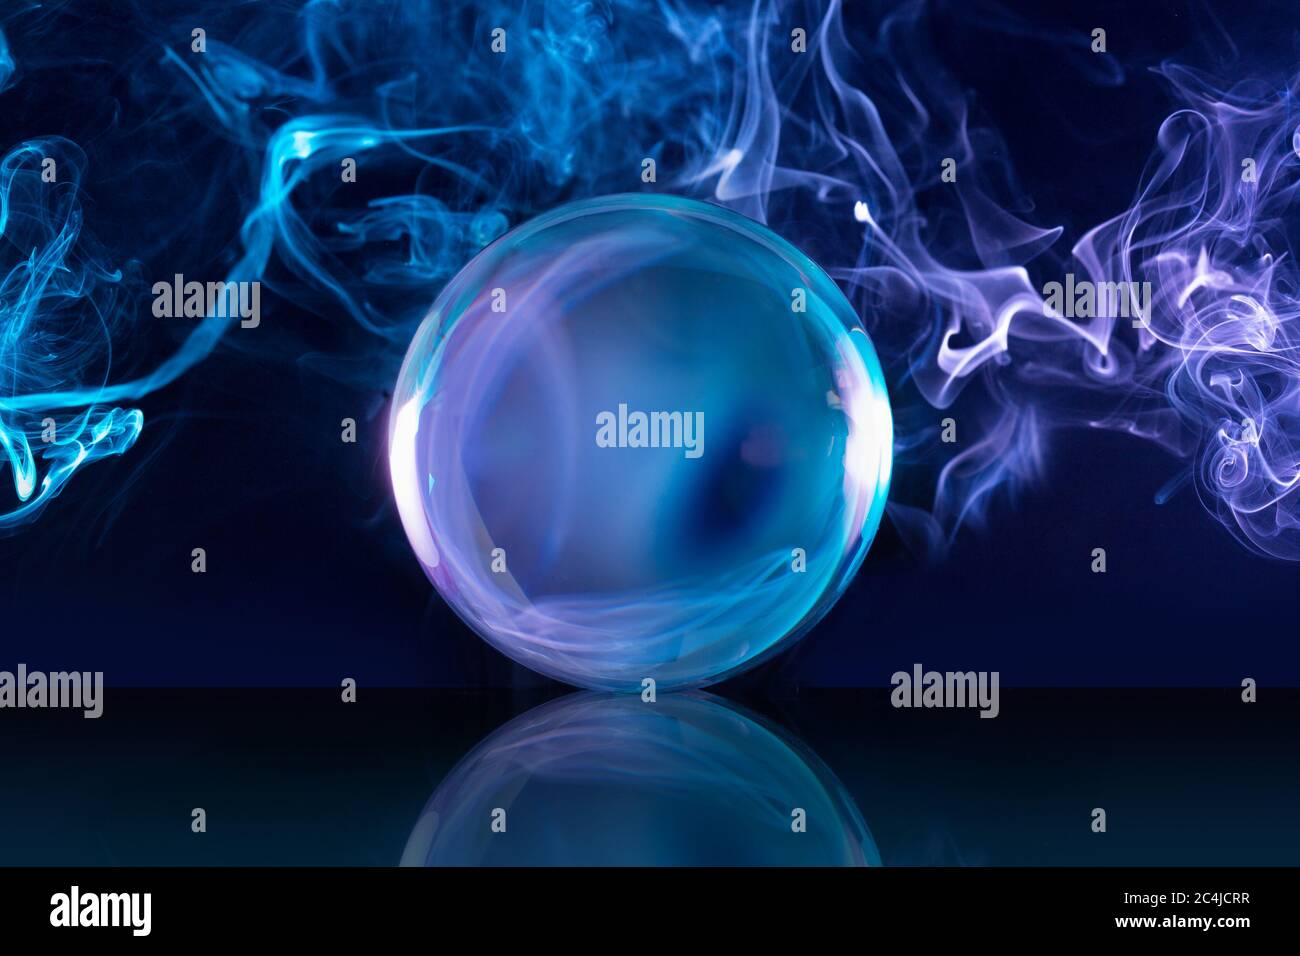 Kristallkugel in einem dunkelblauen rauchigen Hintergrund Stockfoto